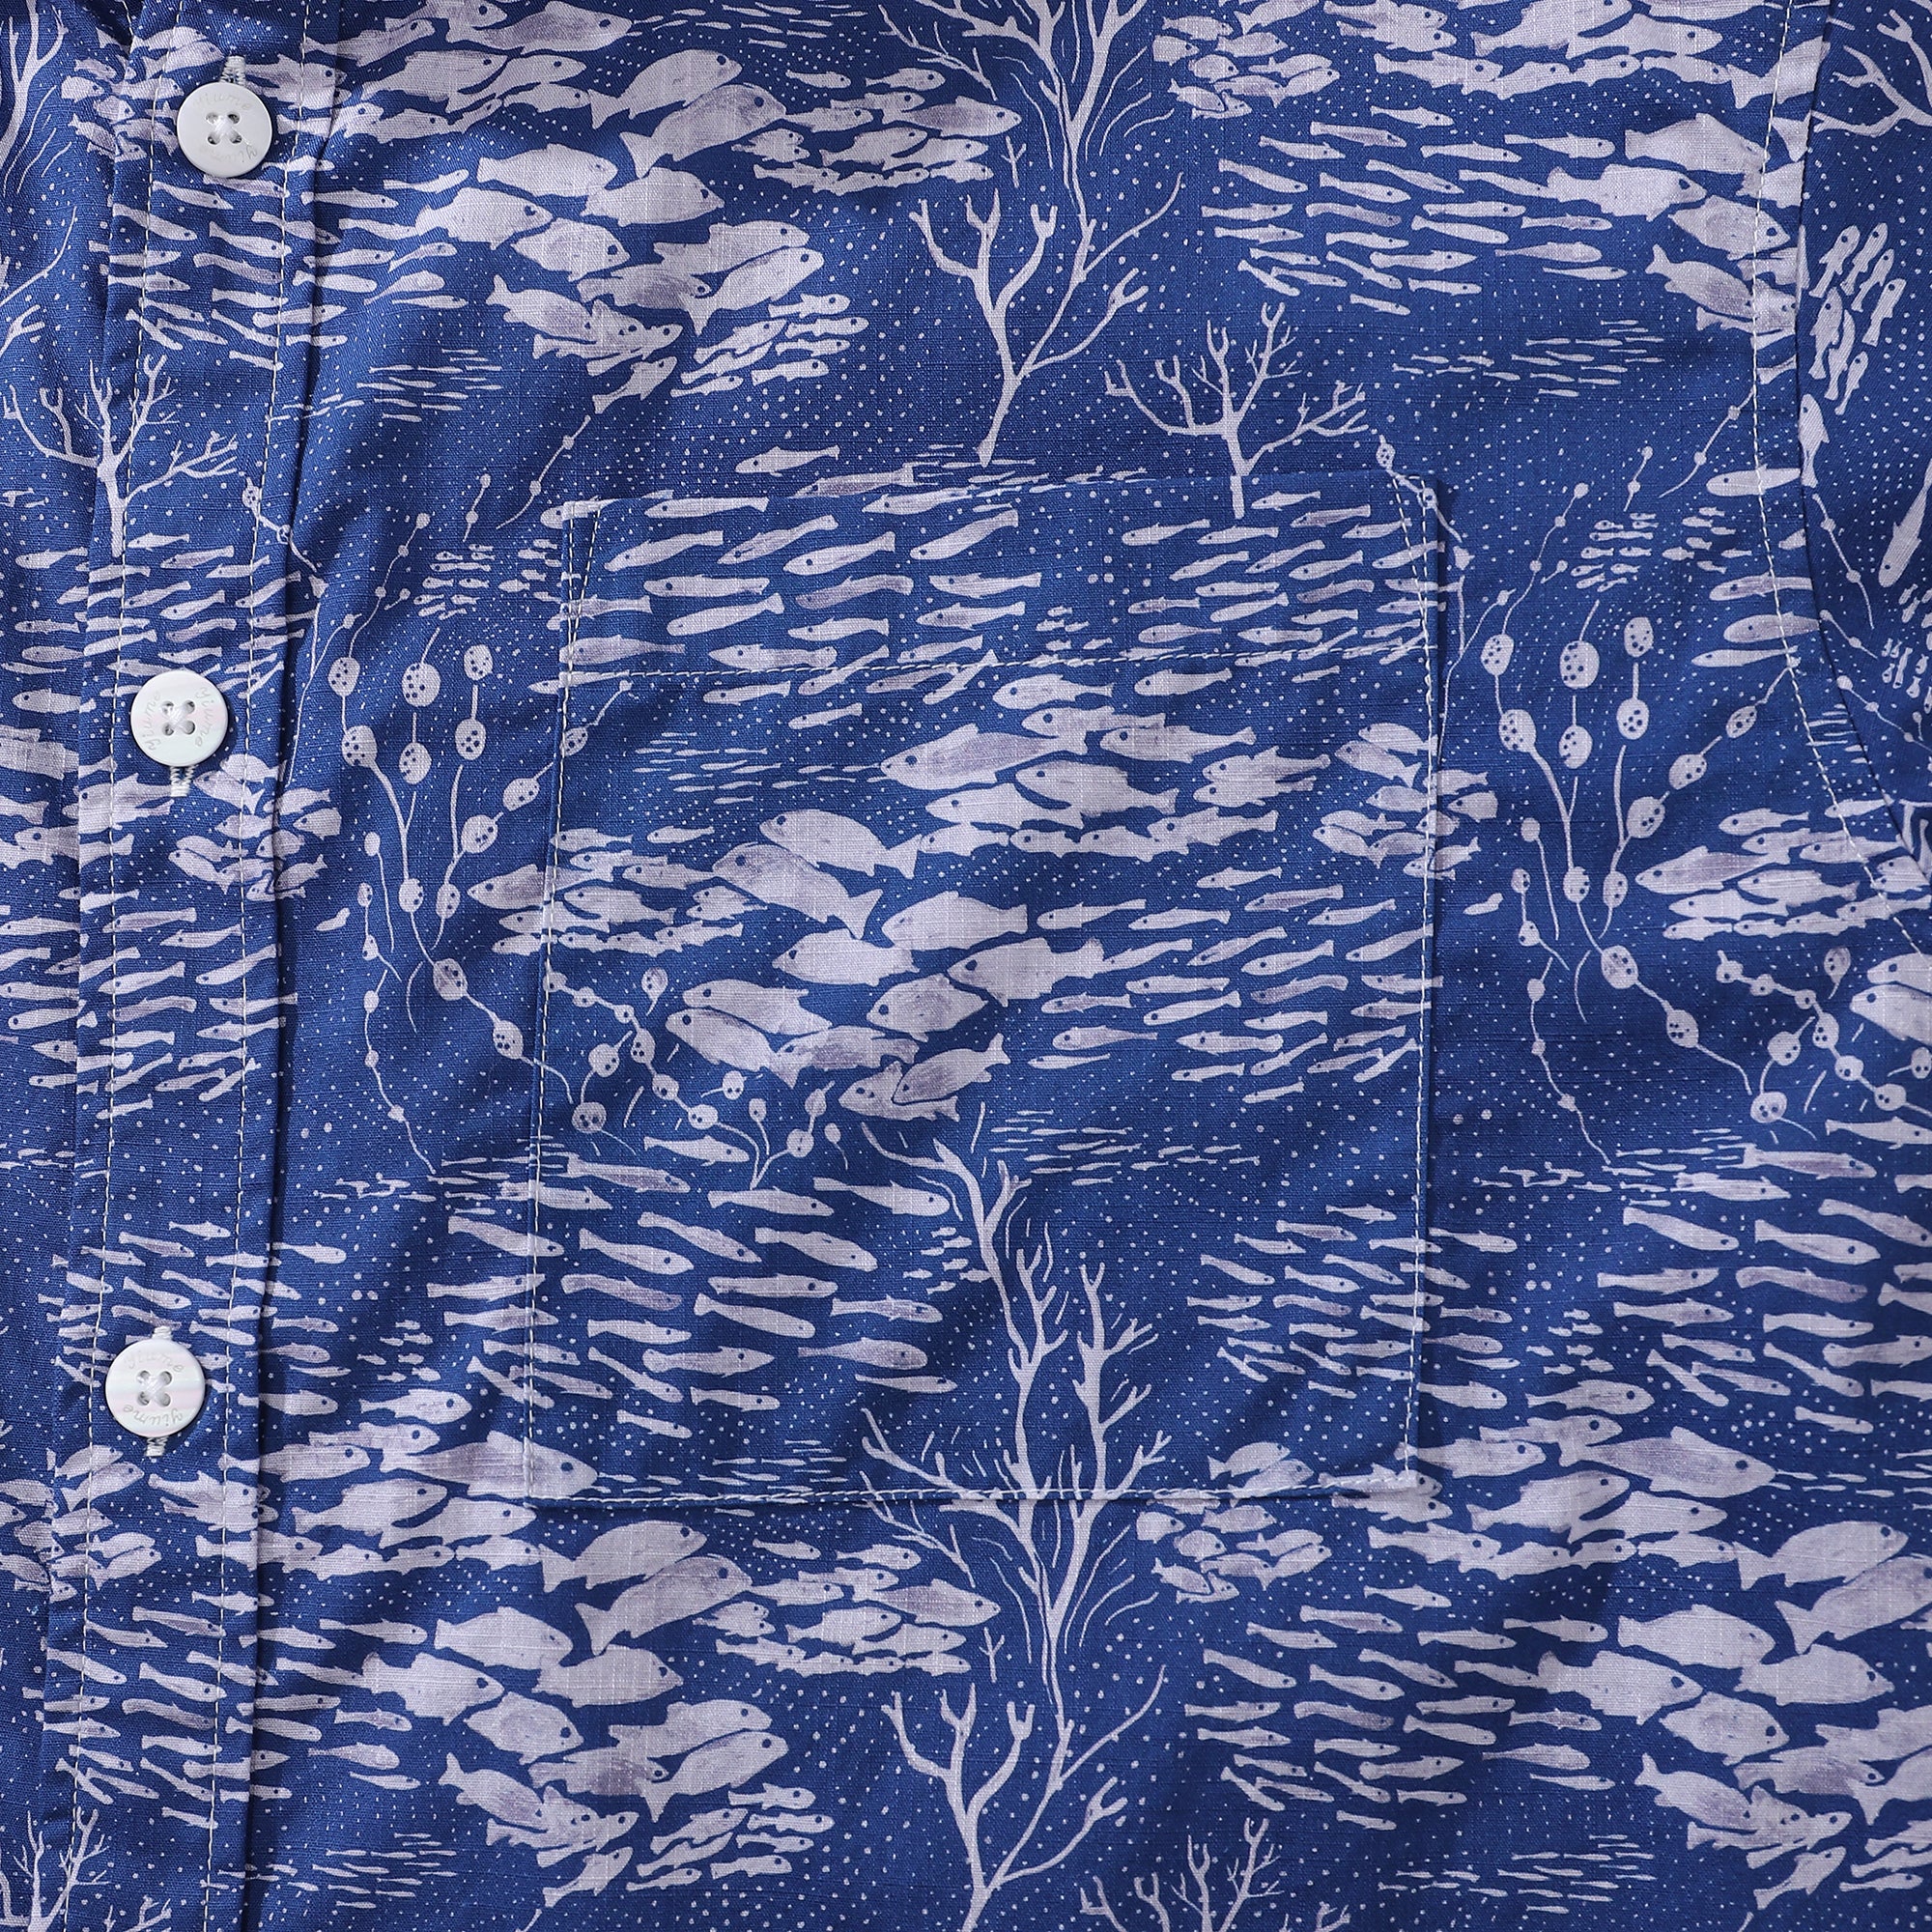 Men's Hawaiian Shirt Shoal Layered Print By Katie O'Shea Design Cotton Button-down Short Sleeve Aloha Shirt